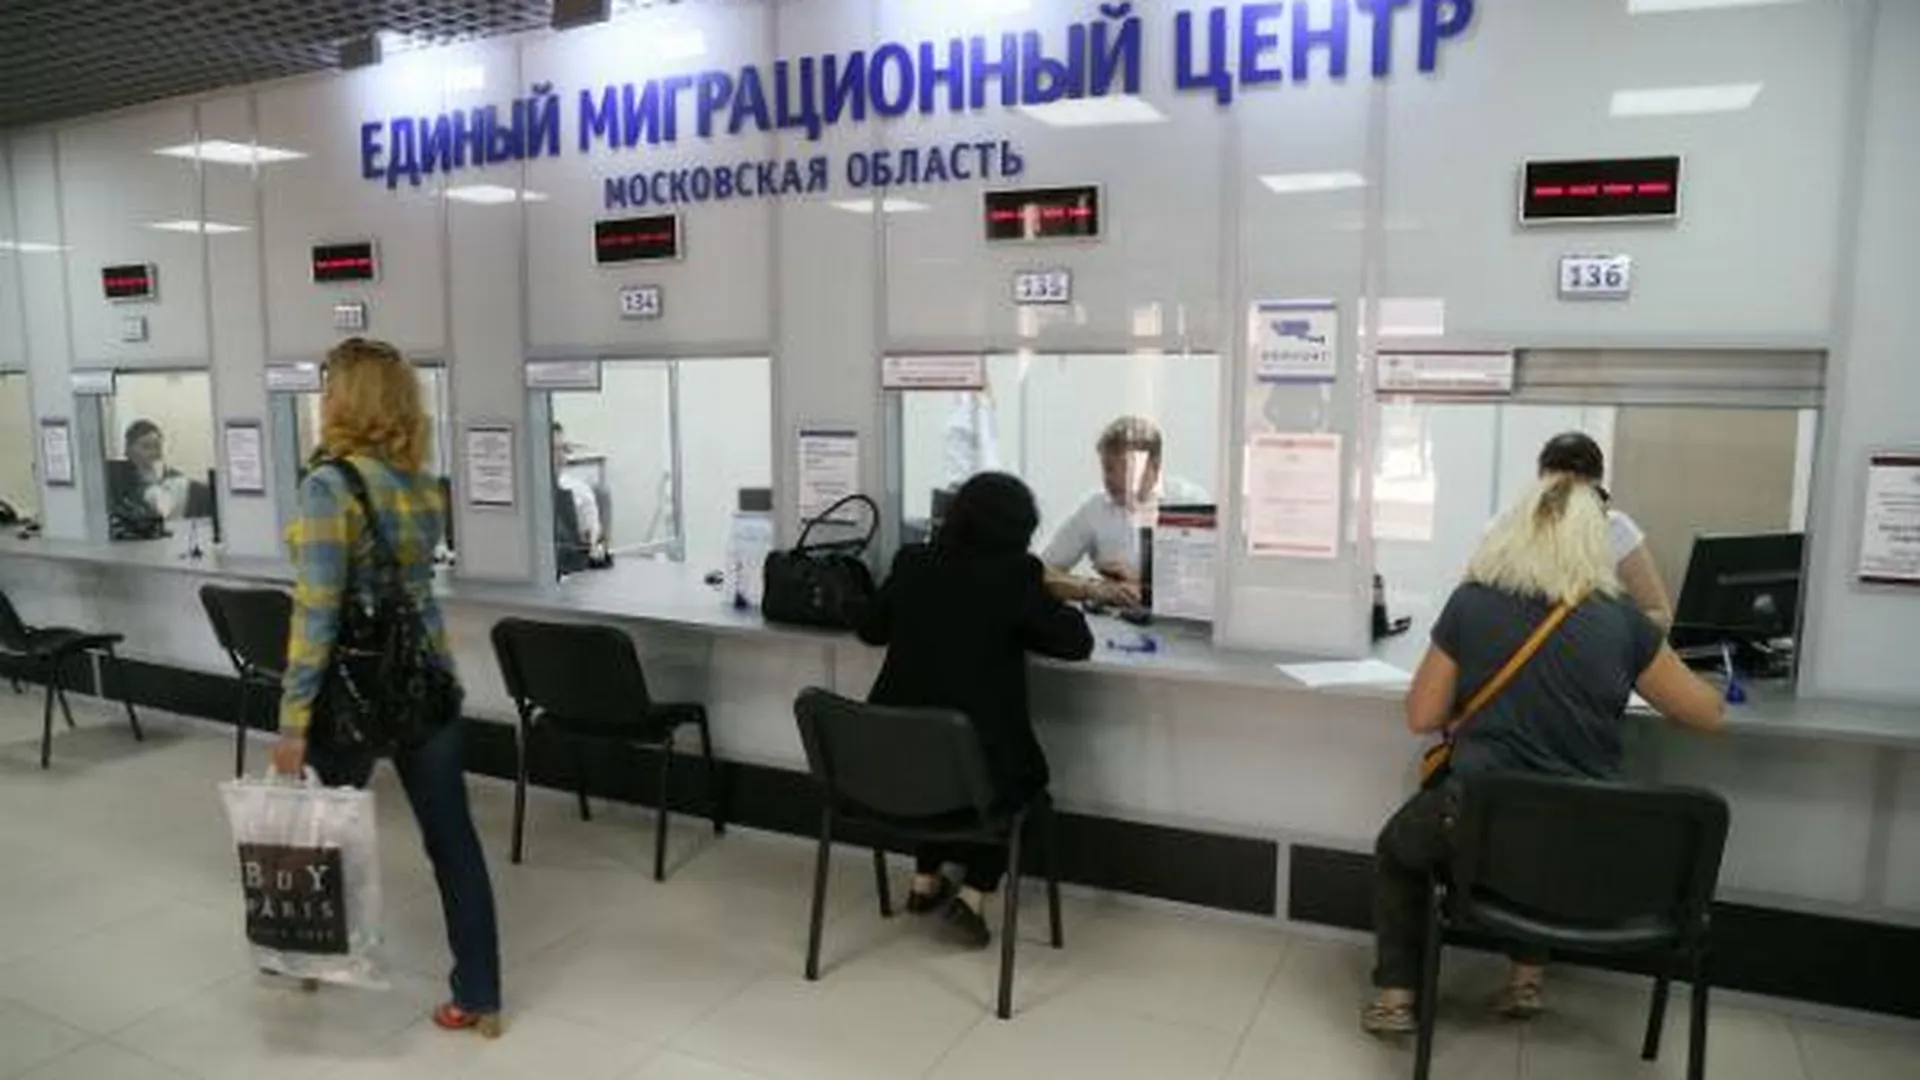 Полмиллиона иностранцев обратились в Единый миграционный центр Подмосковья за два года